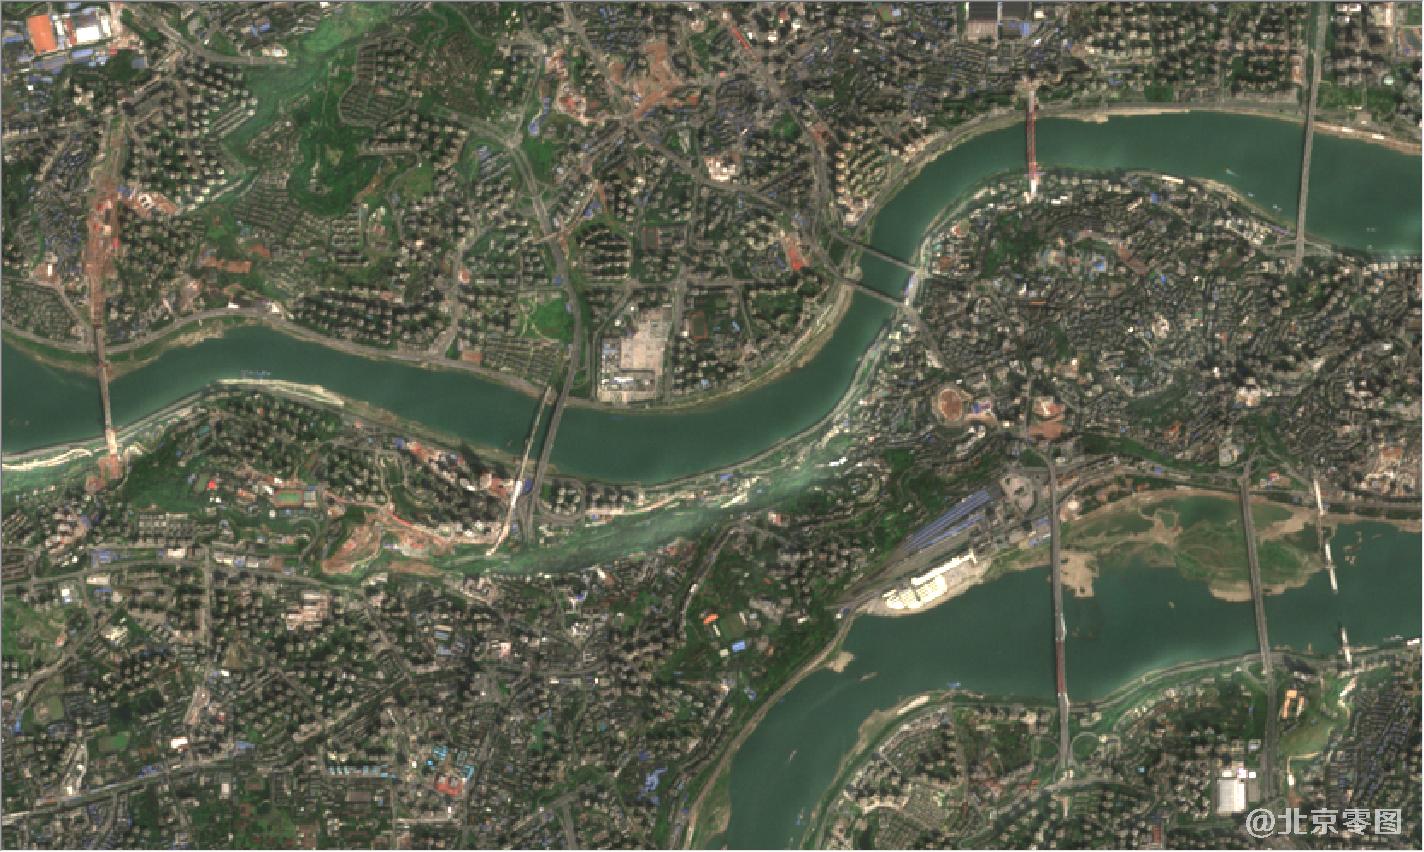 地图由 高频监测卫星拍摄于 2021年3月24日,如需要 购买重庆市高清